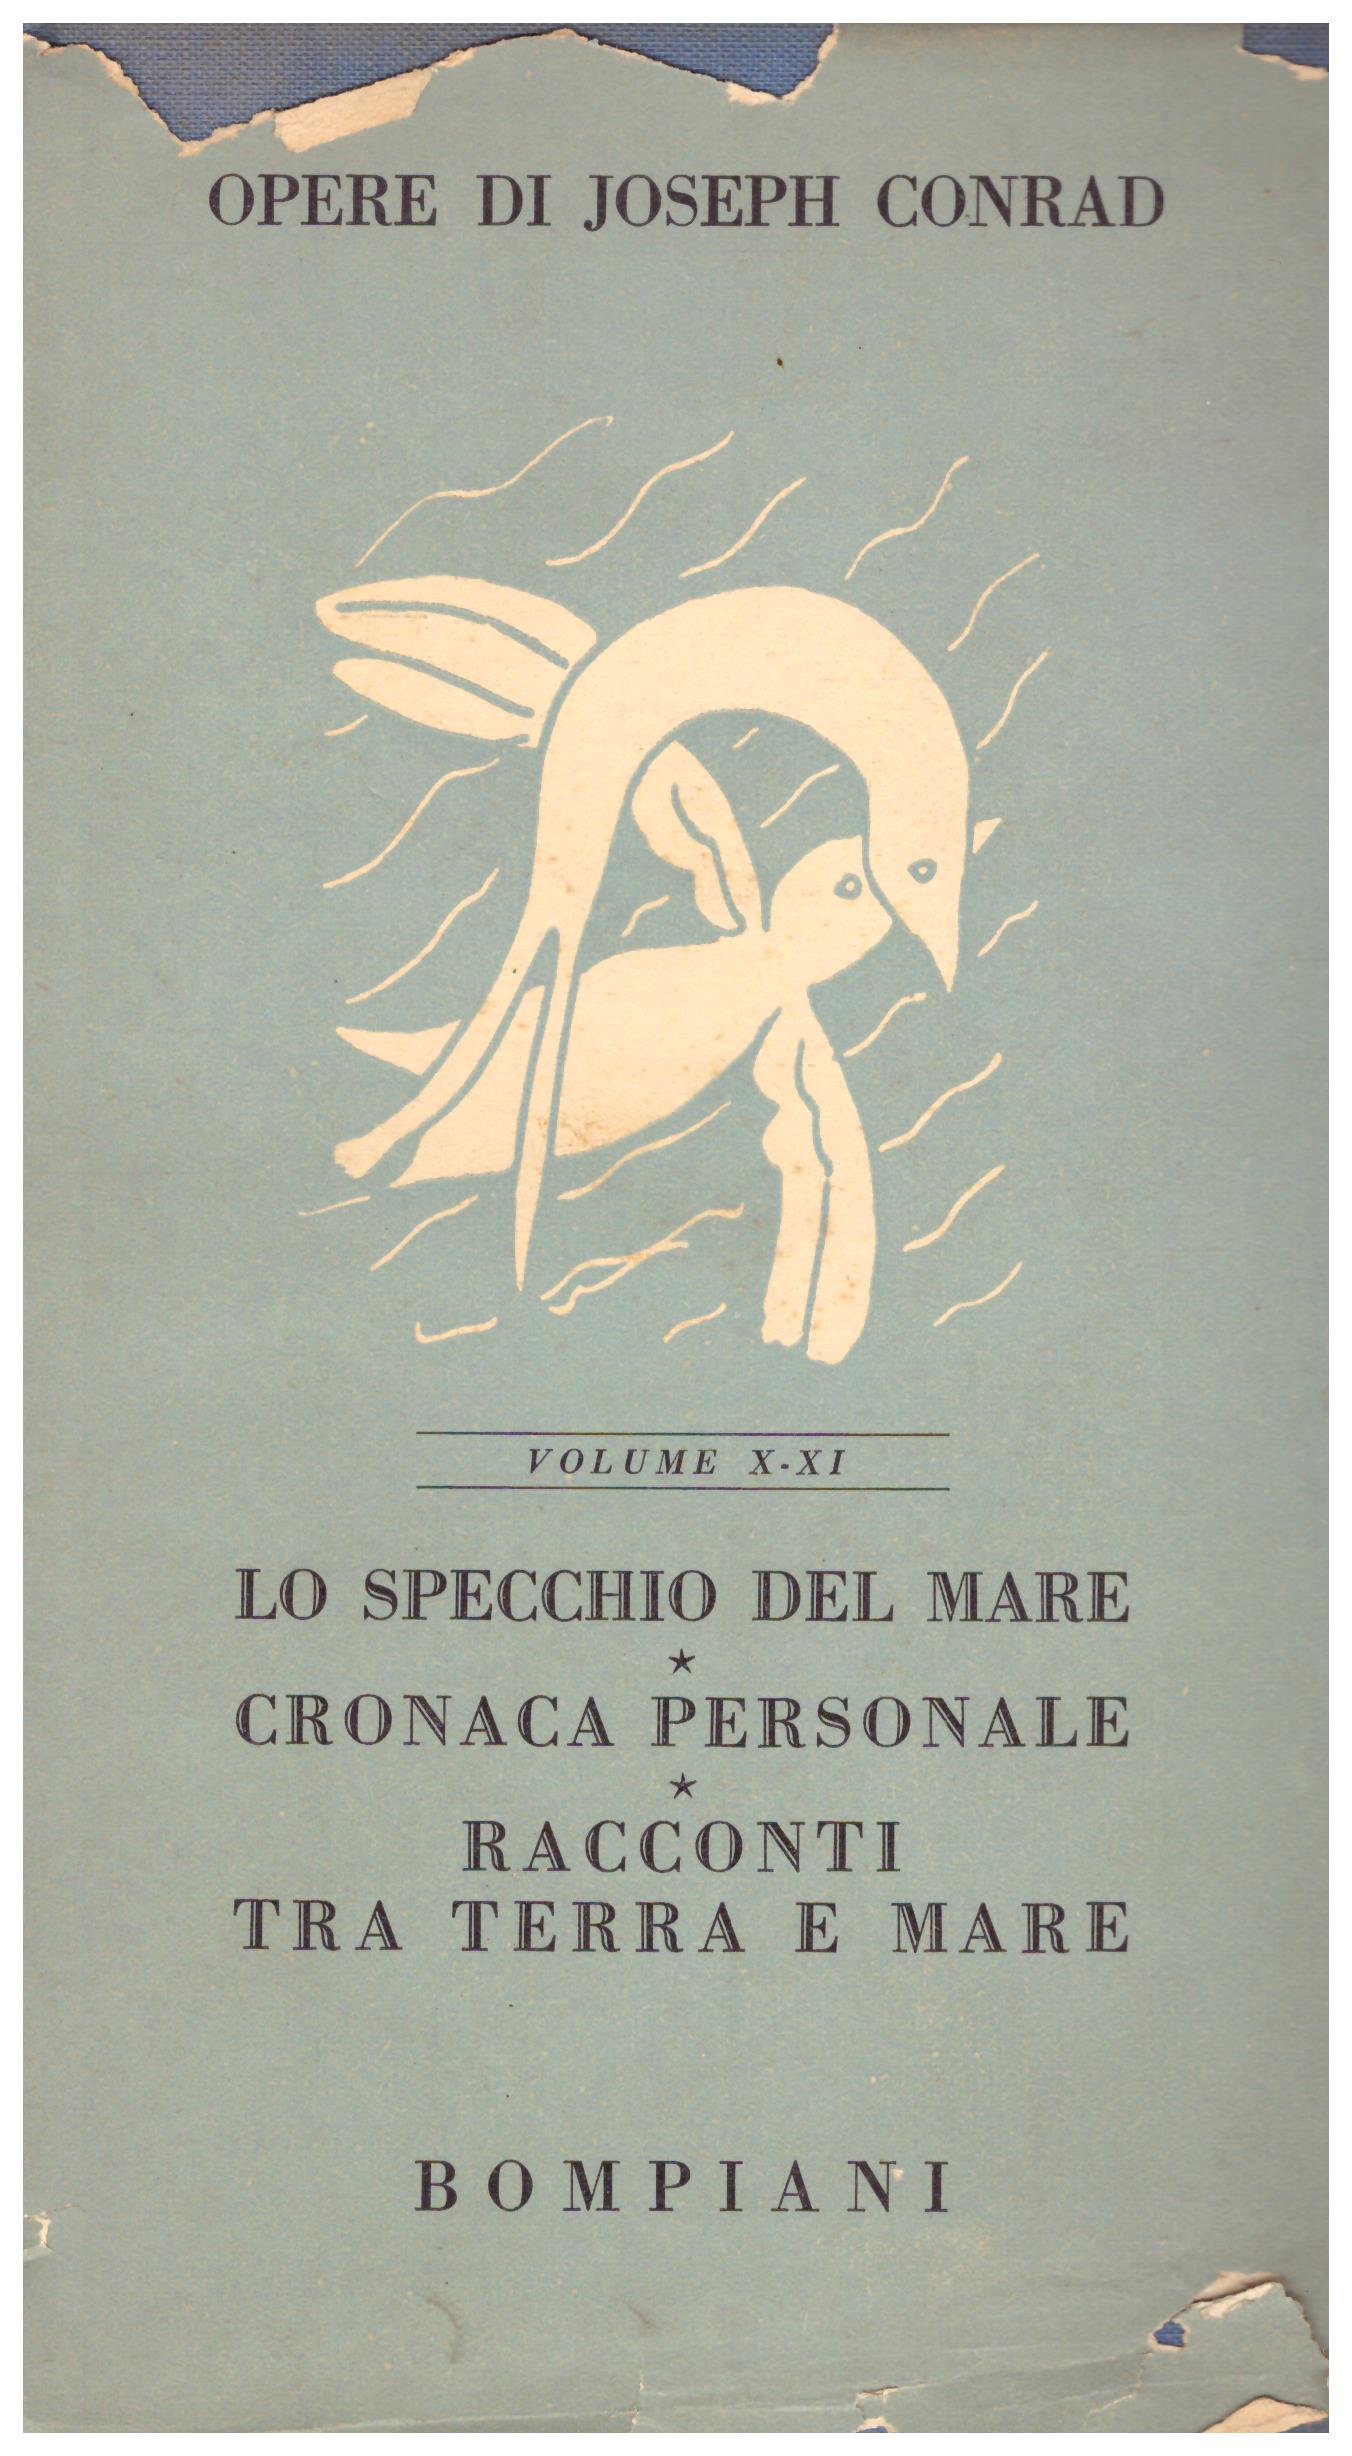 Titolo: Opere di Joseph Conrad Autore: Joseph Conrad Editore: Bompiani, 1954